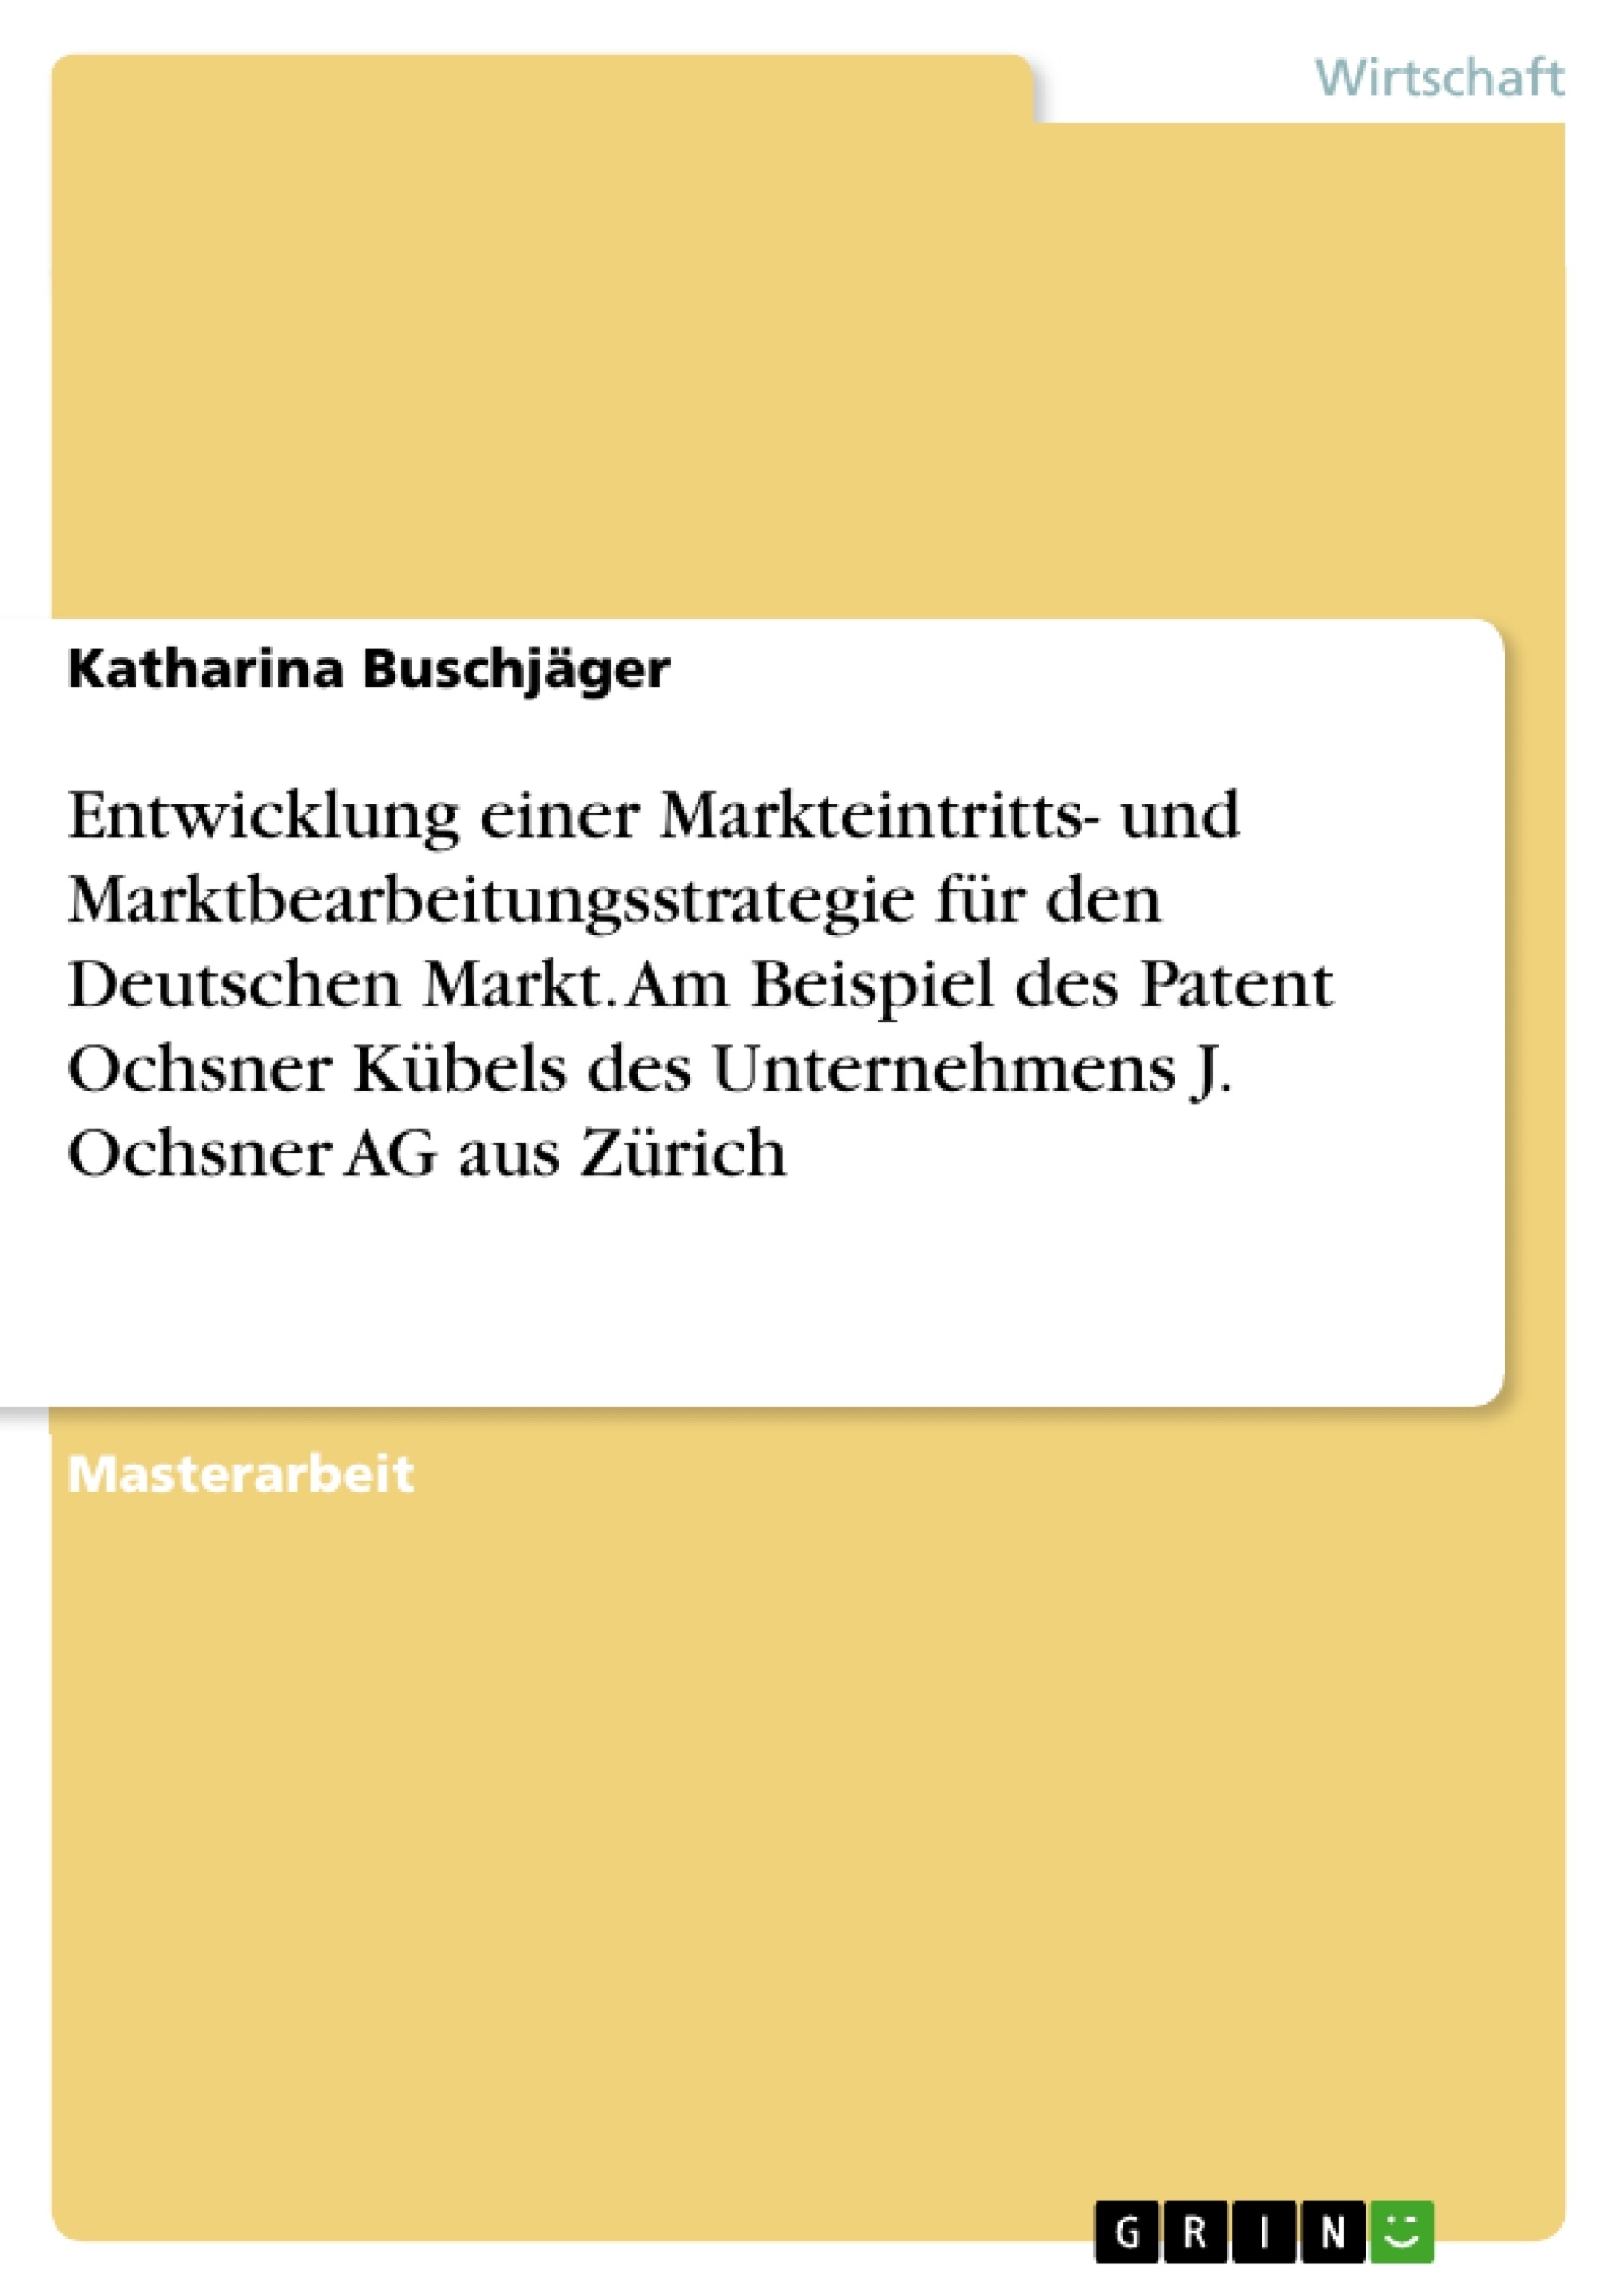 Titel: Entwicklung einer Markteintritts- und Marktbearbeitungsstrategie für den Deutschen Markt. Am Beispiel des Patent Ochsner Kübels des Unternehmens J. Ochsner AG aus Zürich